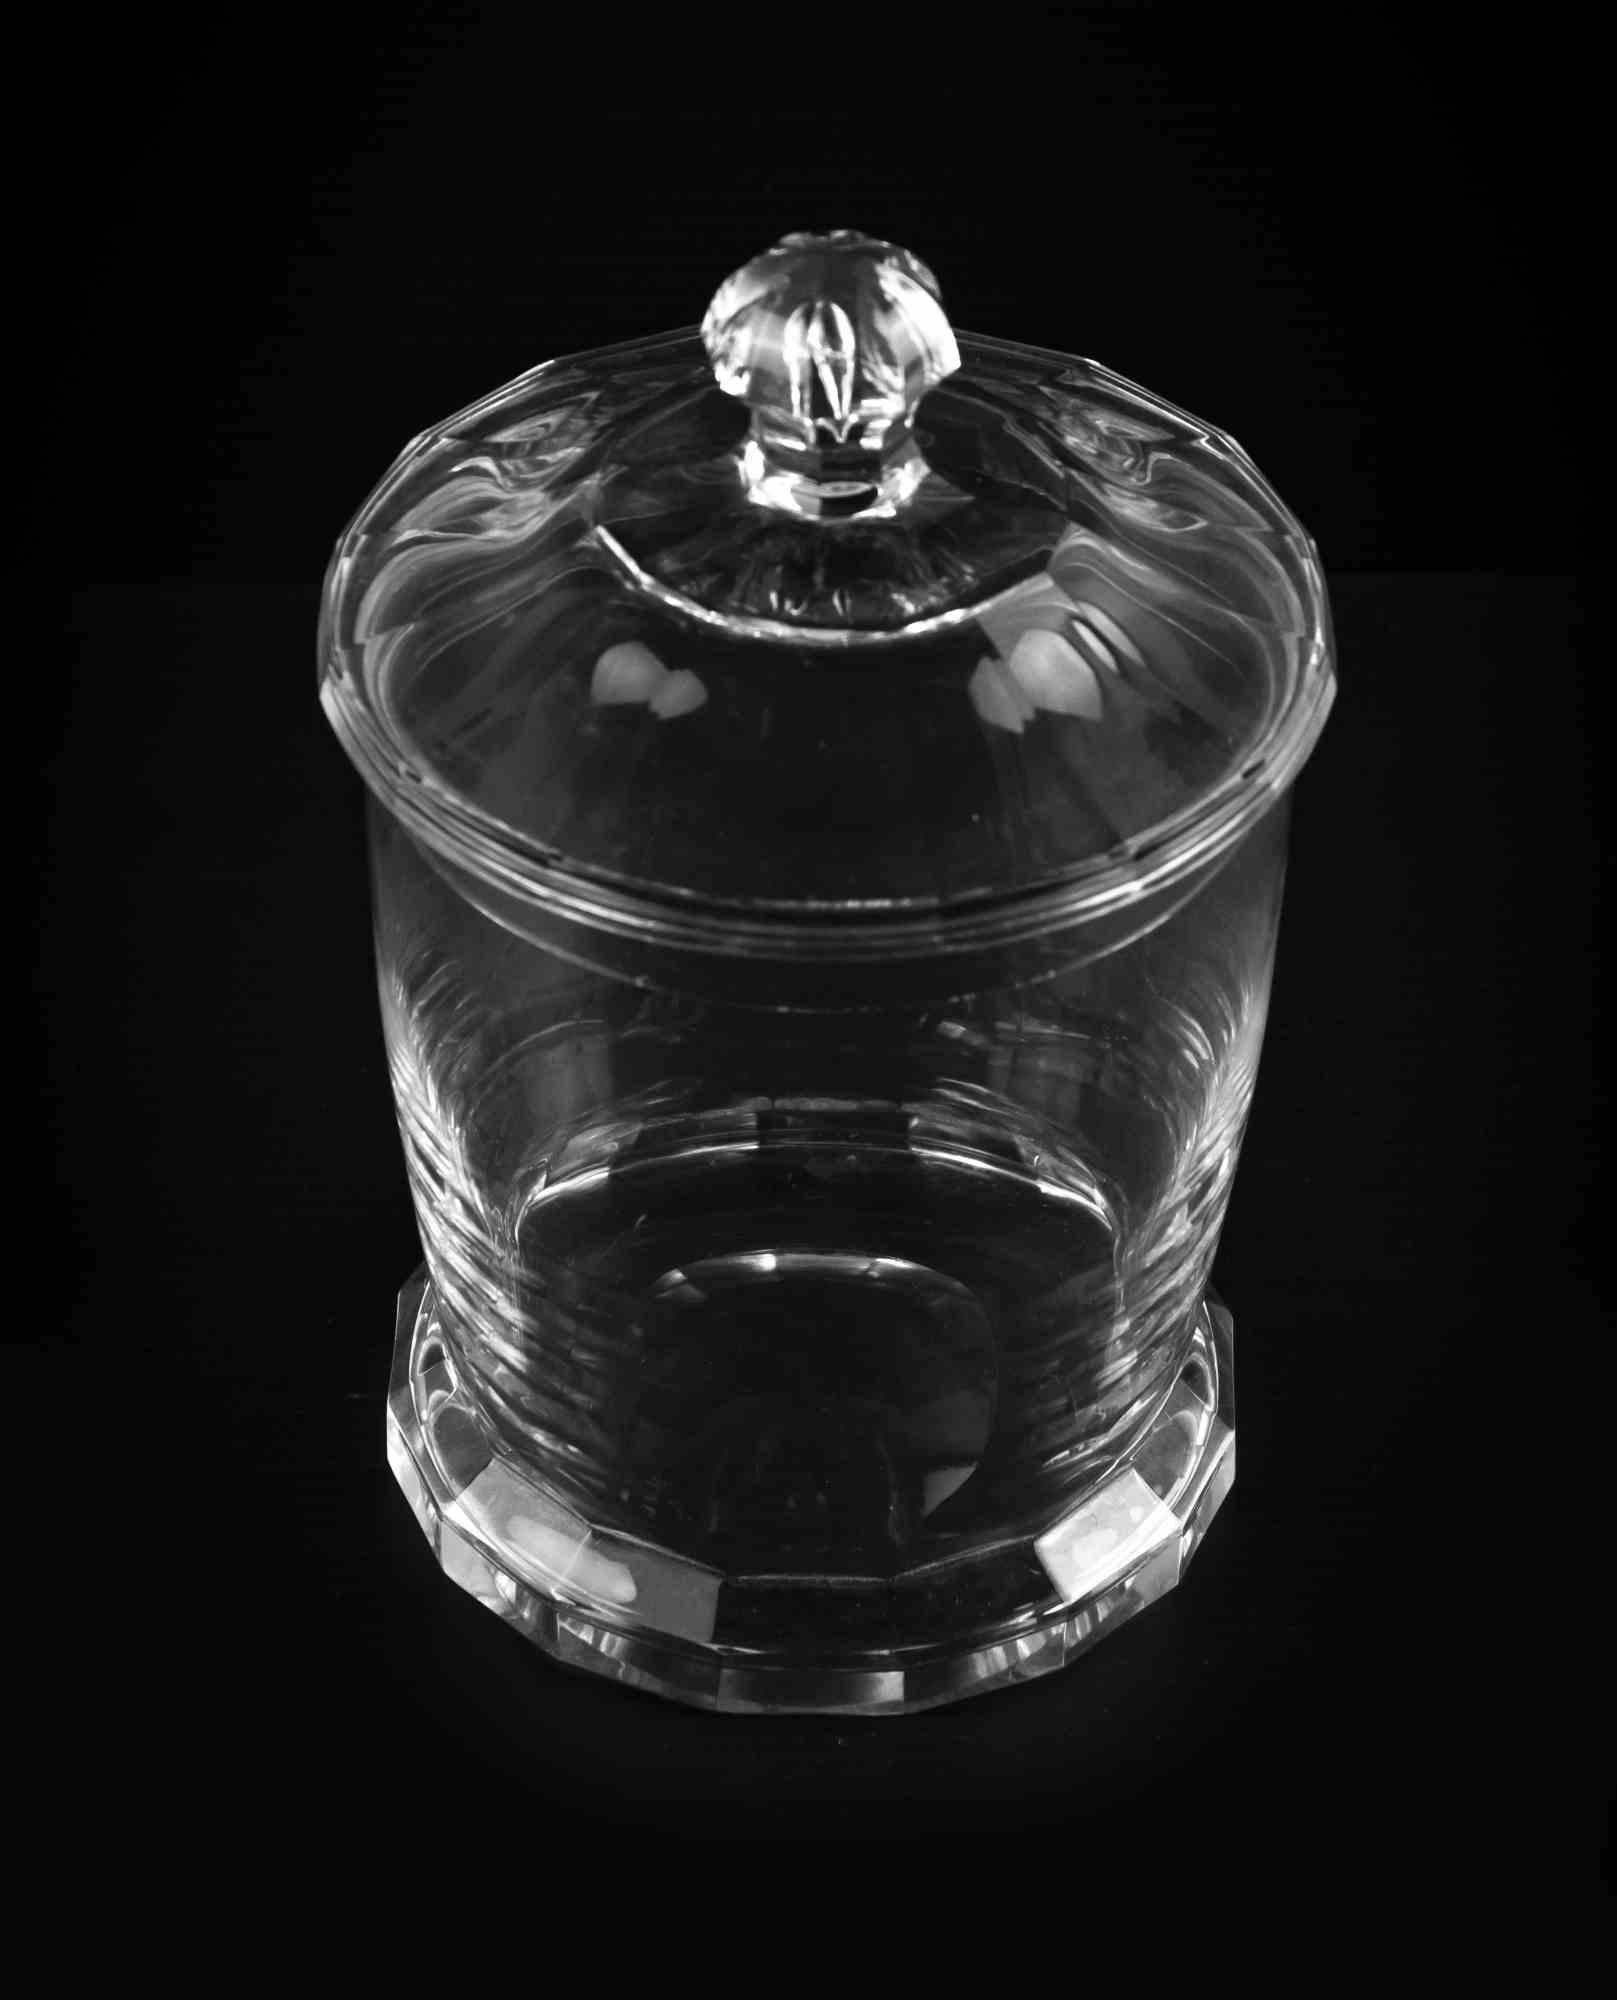 Die Bonbondose aus Glas ist ein originelles Dekorationsobjekt aus den 1970er Jahren.

Transparentes Glasobjekt, perfekt um Ihre Süßigkeiten aufzubewahren und Ihrem Tisch Eleganz zu verleihen!

Guter Zustand bis auf einen Kratzer, der abplatzt.